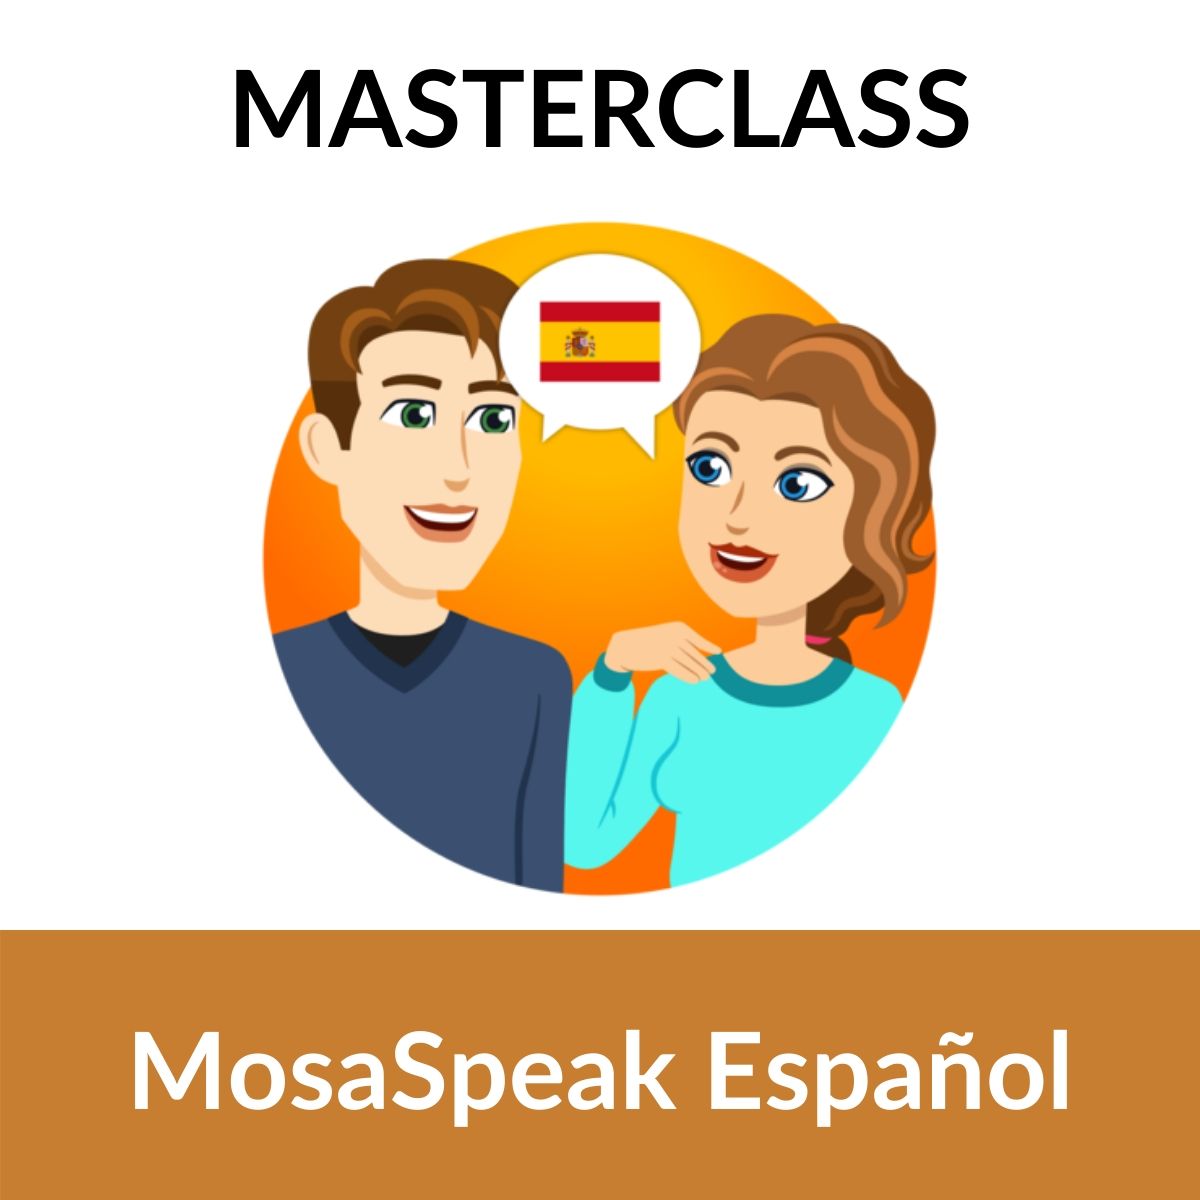 come-migliorare-la-tua-pronuncia-spagnola-rapidamente-mosalingua